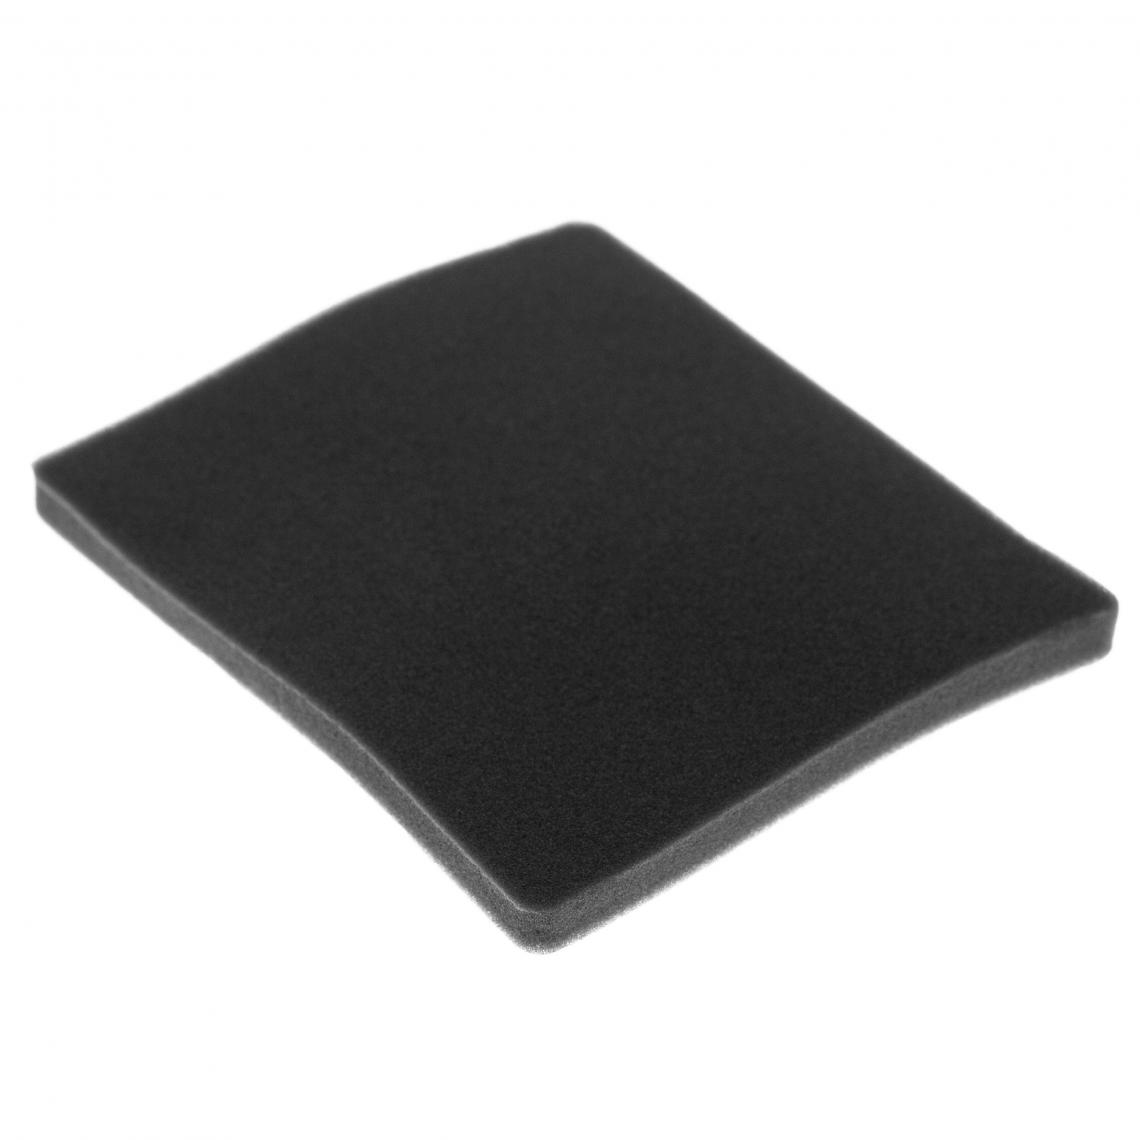 Vhbw - vhbw Filtre compatible avec Electrolux ZAM6260 (910288774) aspirateur - filtre de sortie d'air (filtre éponge), noir - Accessoire entretien des sols